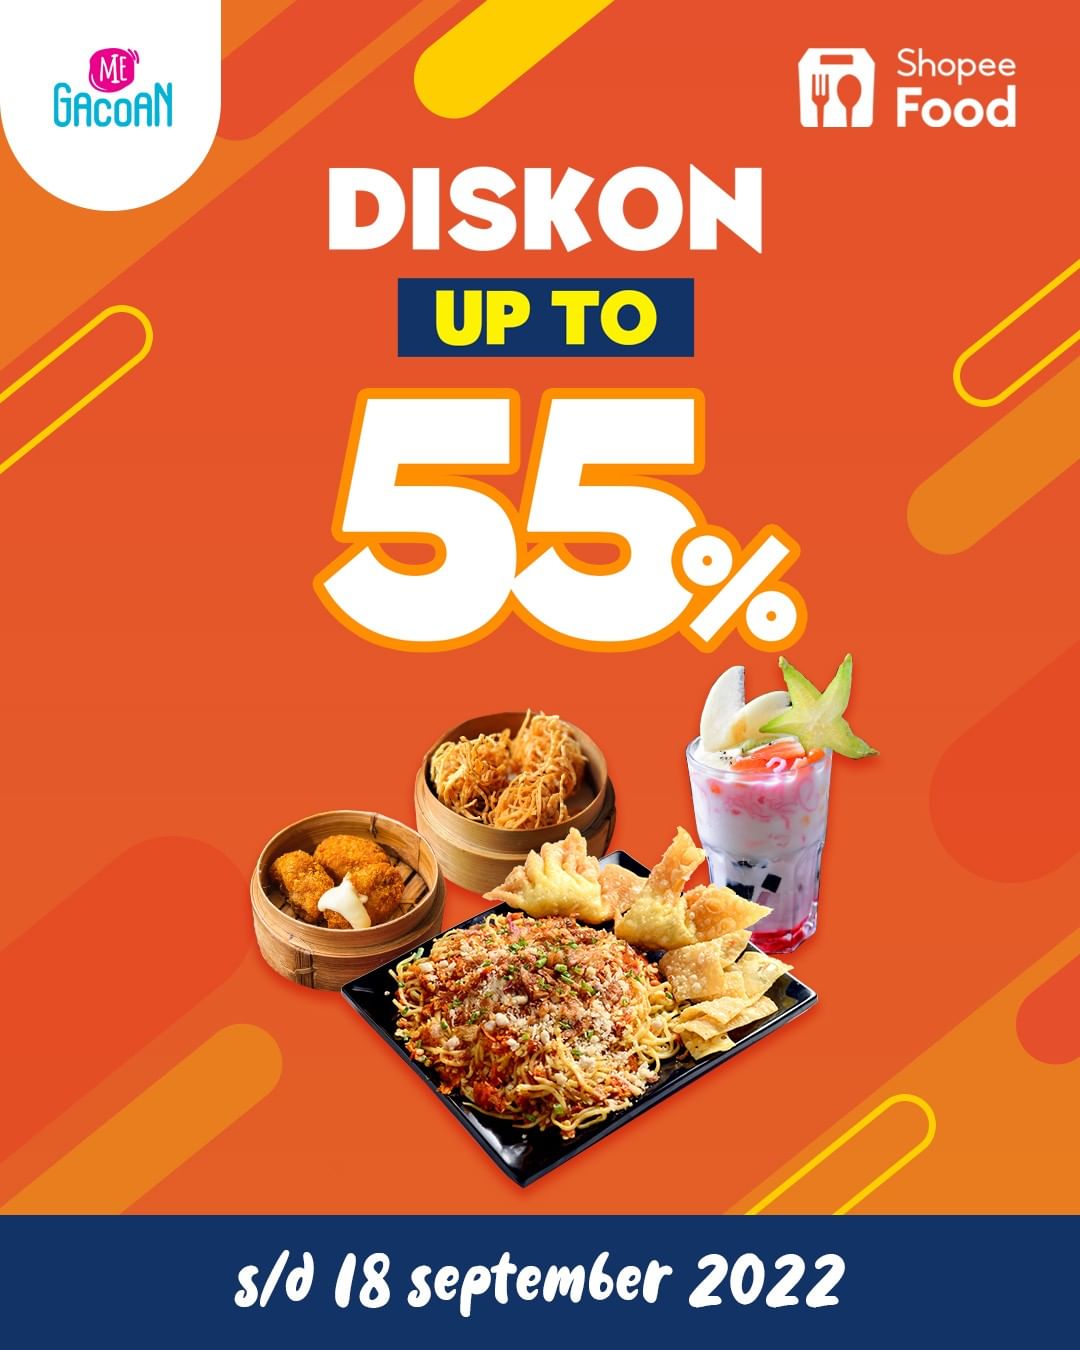 Promo MIE GACOAN DISKON HINGGA 55% untuk pemesanan via SHOPEEFOOD